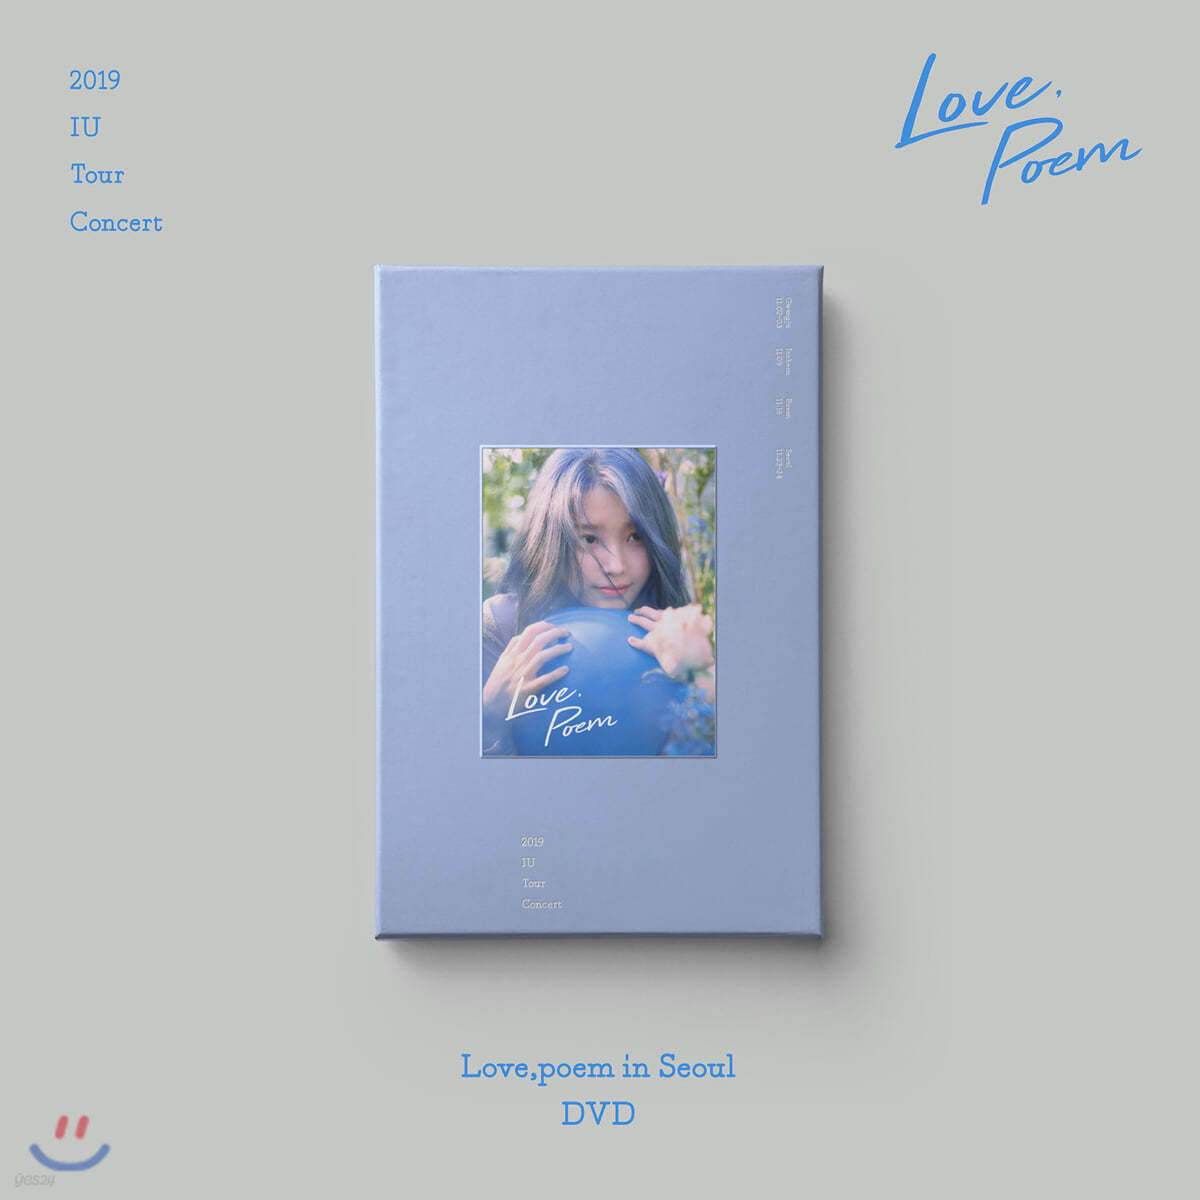 아이유 (IU) - 2019 IU Tour Concert [Love, poem] in Seoul DVD